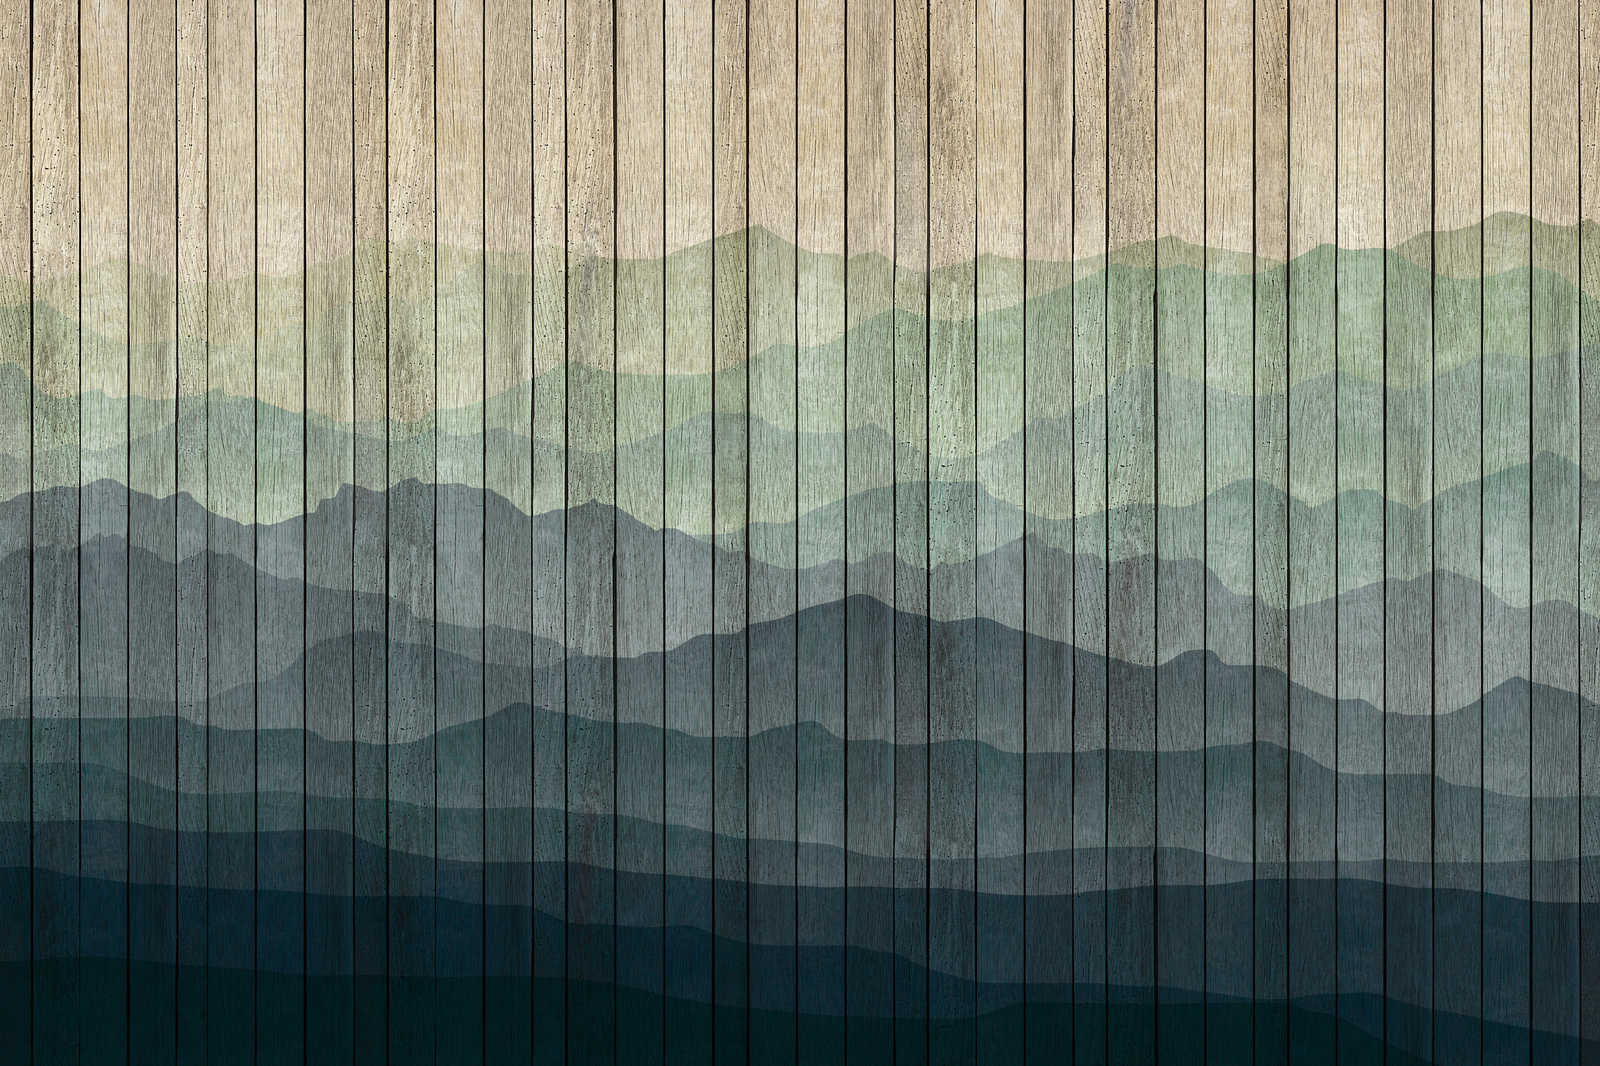             Mountains 1 - toile moderne paysage de montagne & aspect planche - 0,90 m x 0,60 m
        